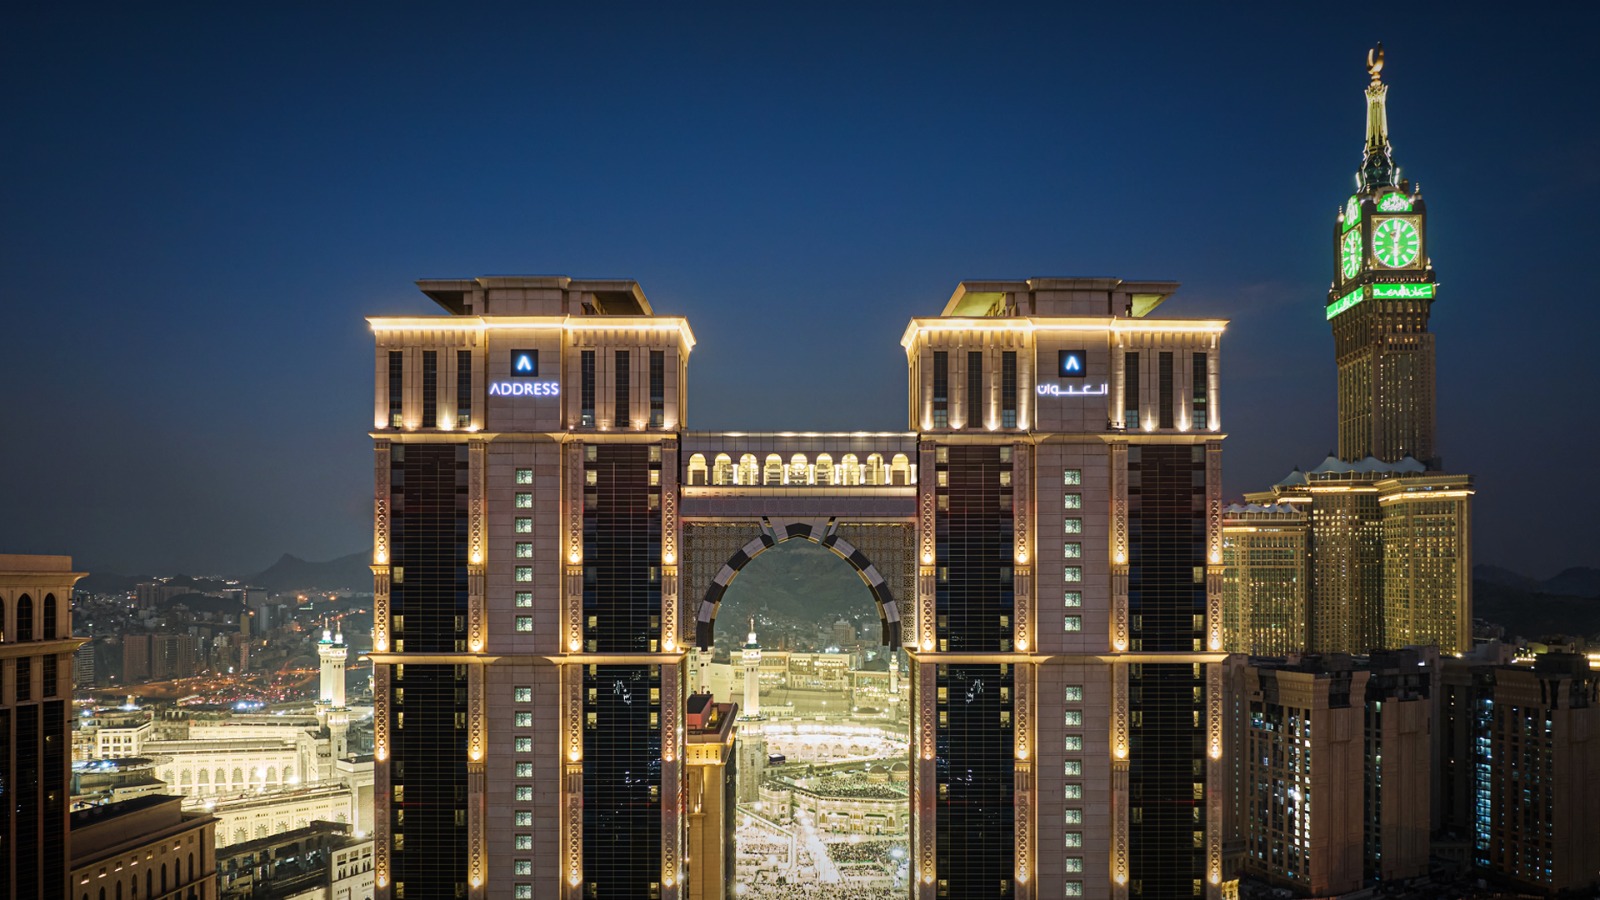 فندق العنوان جبل عمر مكة يقدم مجموعة من تجارب الضيافة المميزة احتفاءً بشهر رمضان المبارك